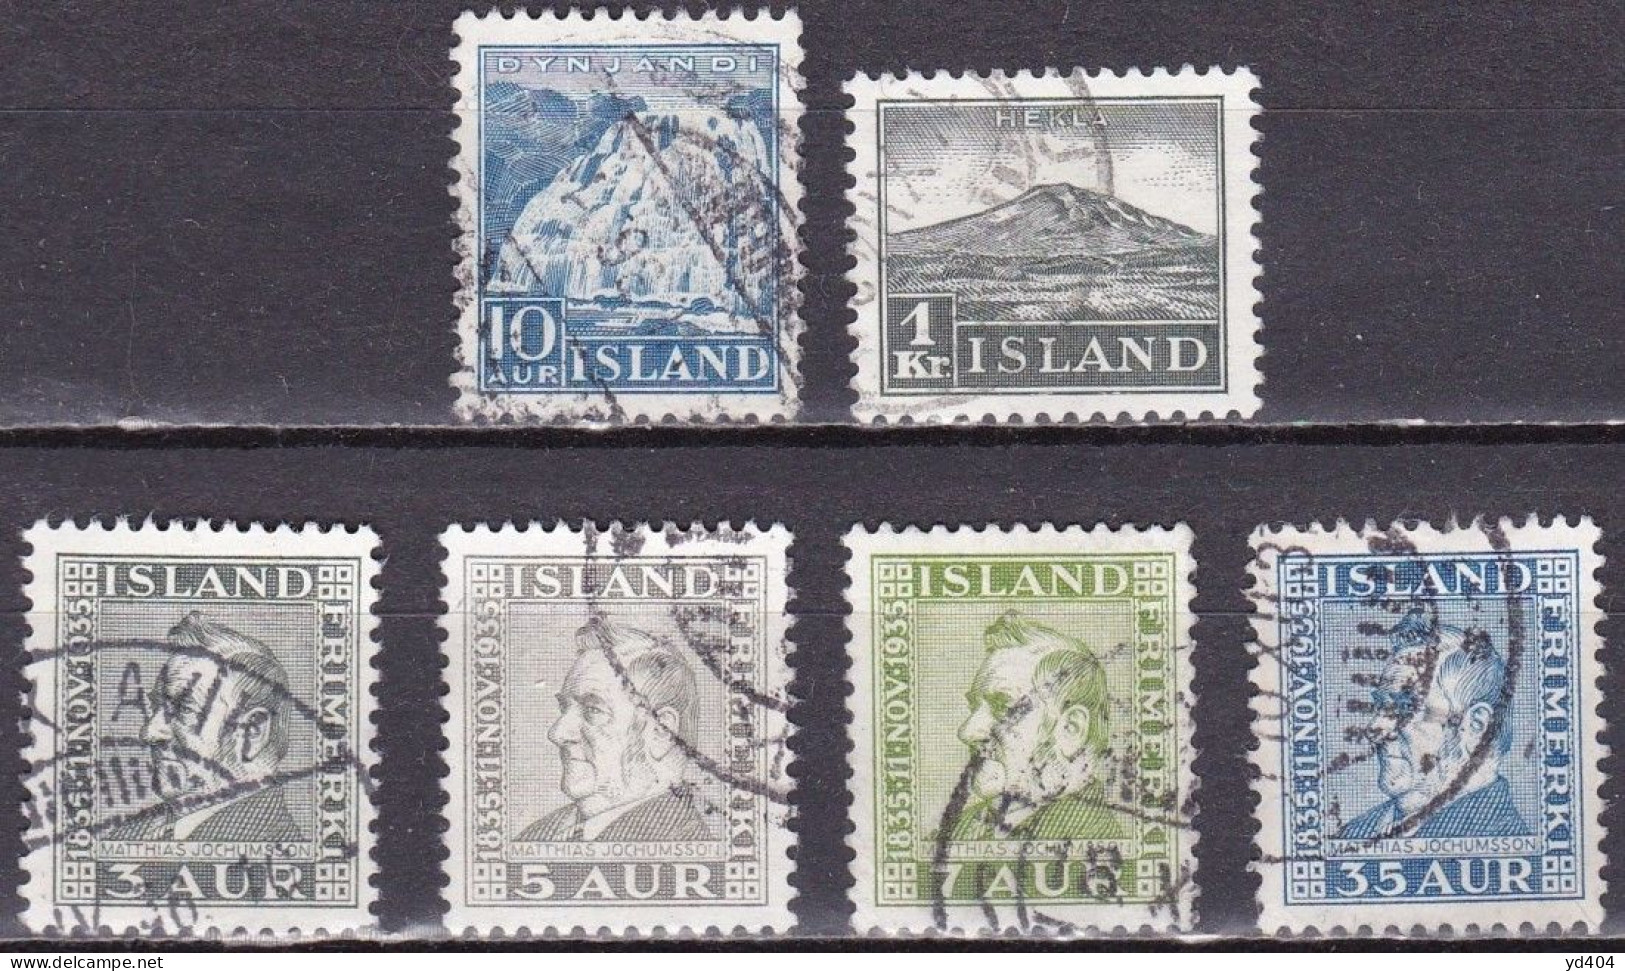 IS032 – ISLANDE – ICELAND – 1935 – FULL YEAR SET – SG # 214/9 USED 11 € - Gebraucht